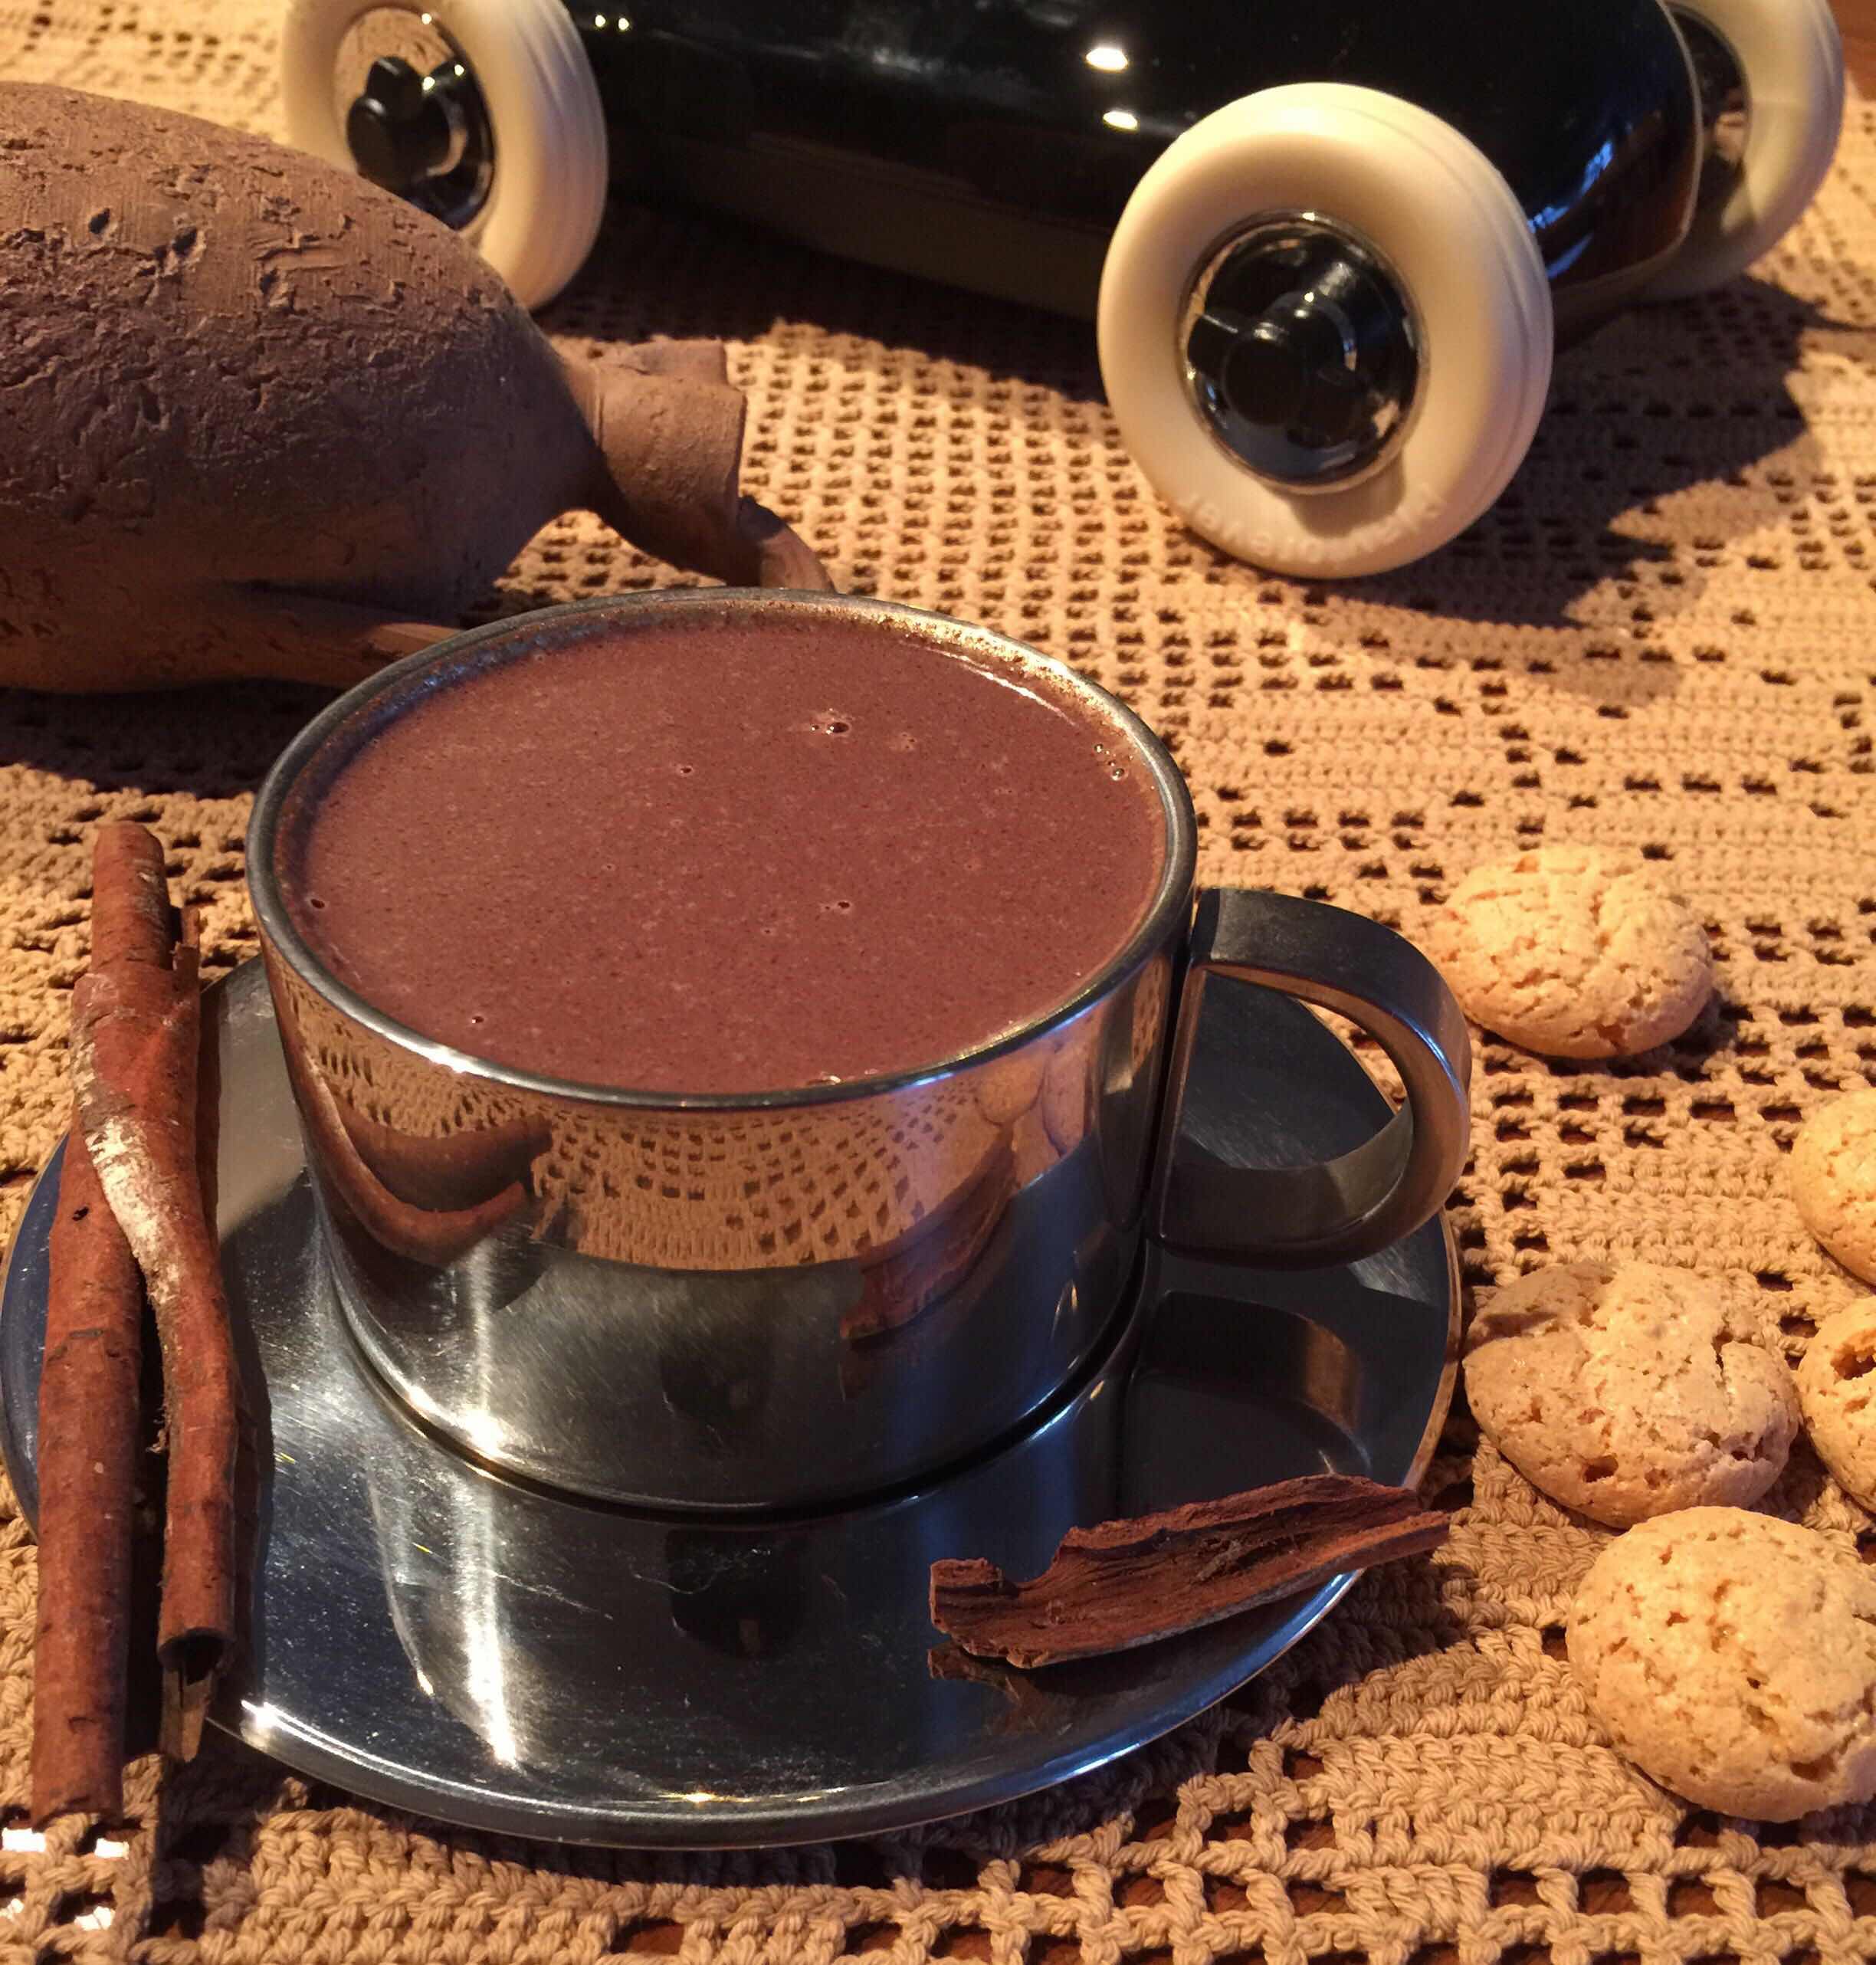 Рецепты кофе с шоколадом